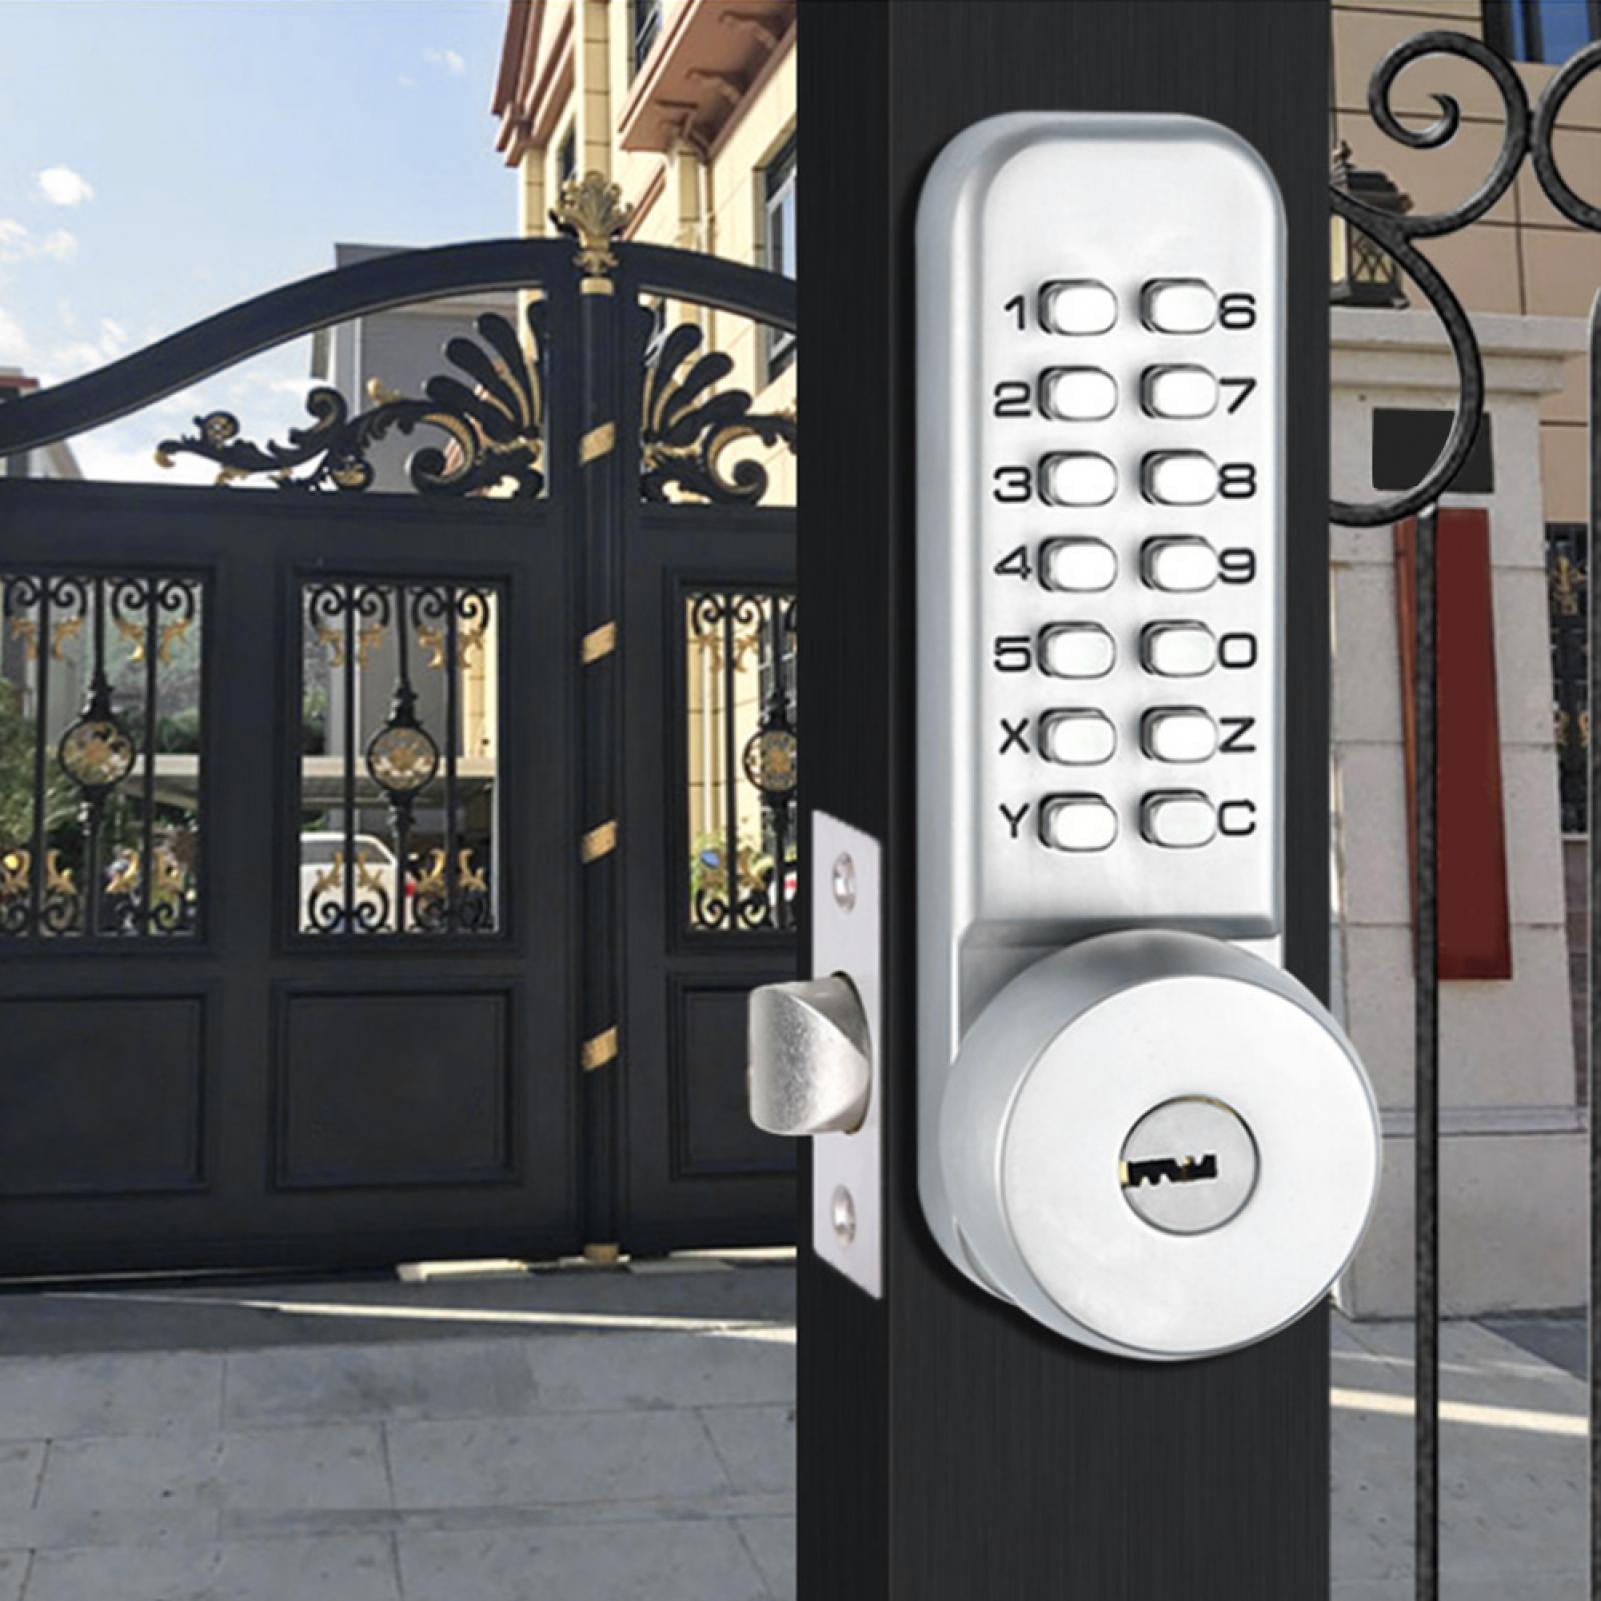 Waterproof 1-11 Digit Combination Lock for Home Rental Doors Furniture Cabinets Villas Composite Doors Sturdy Home Security Lock Password Door Lock 